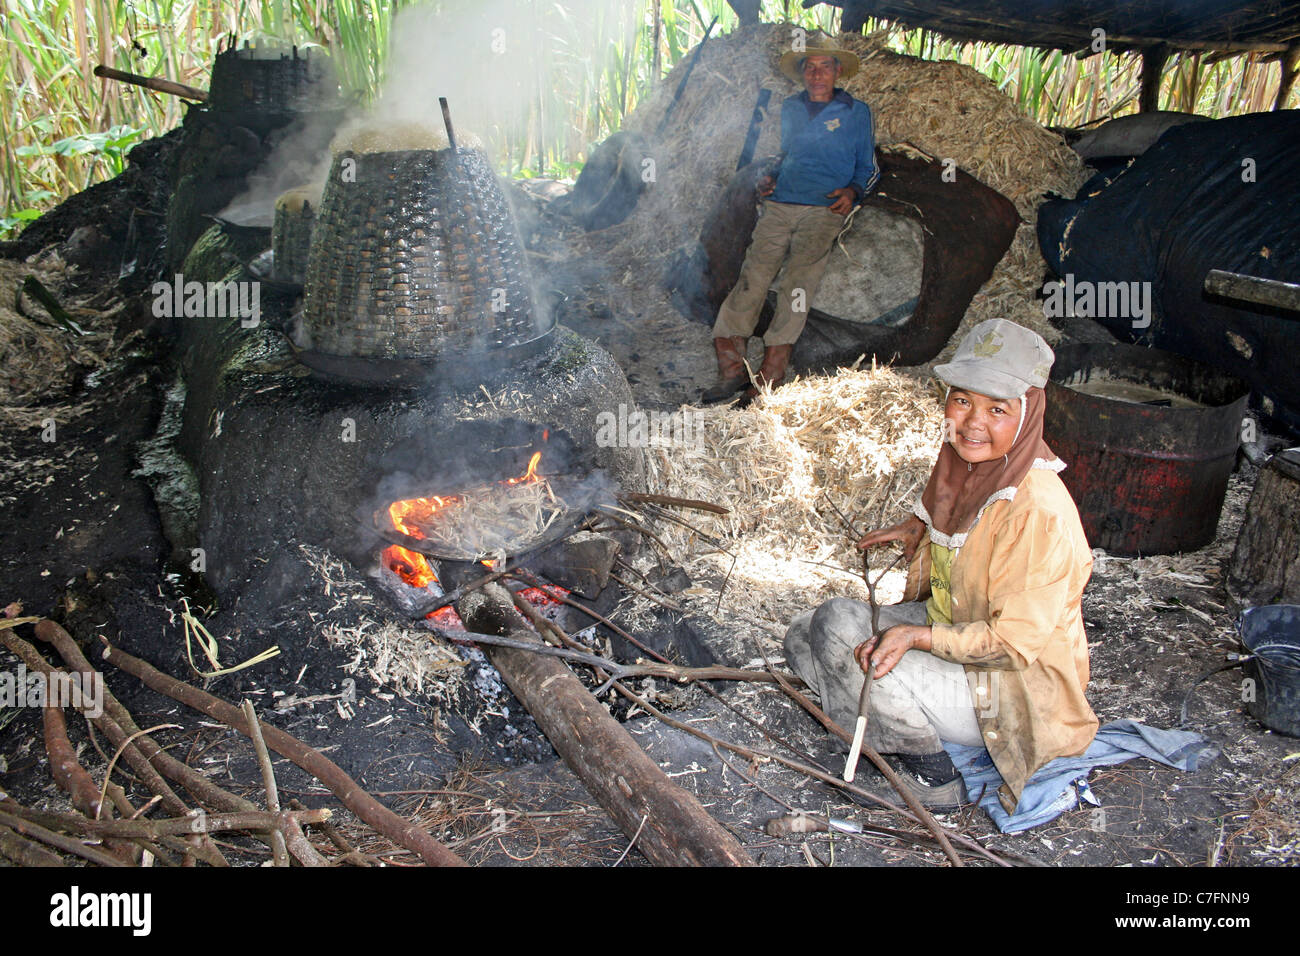 Processus de raffinage de la canne à sucre Village à Sumatra, Indonésie Banque D'Images